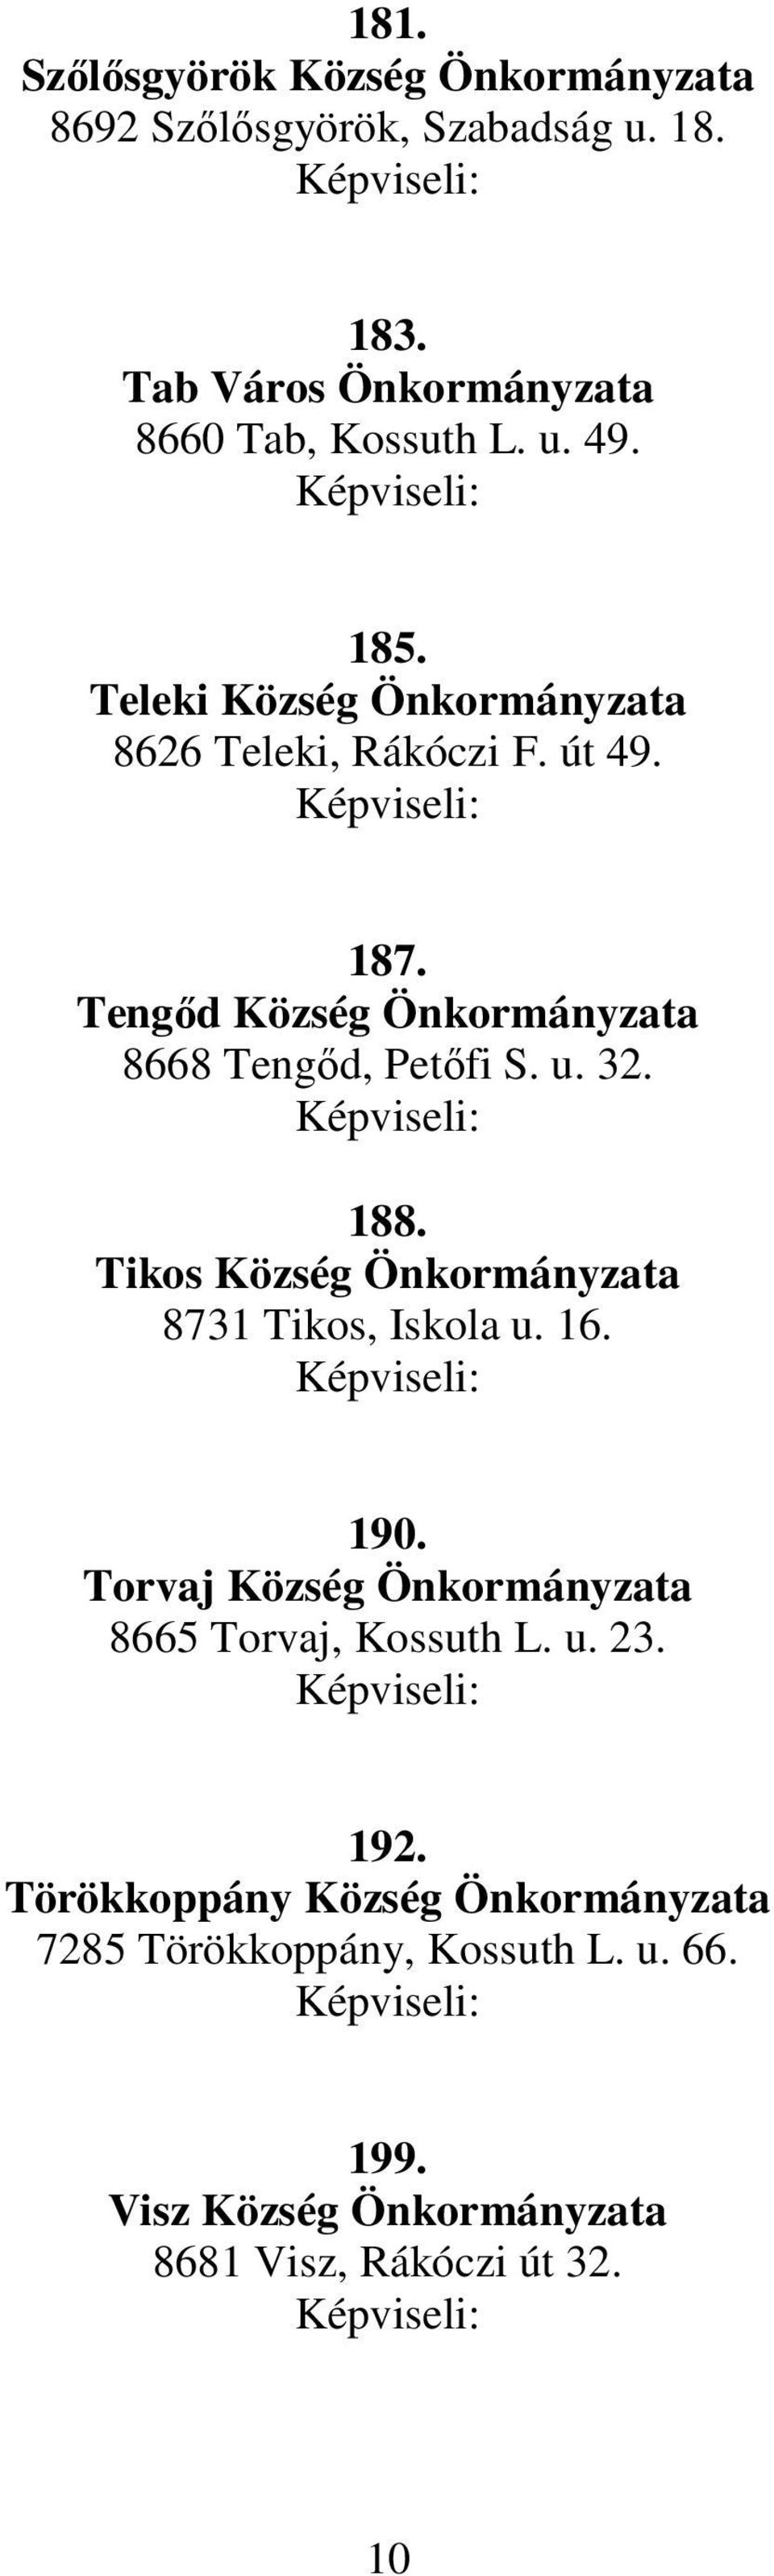 188. Tikos Község Önkormányzata 8731 Tikos, Iskola u. 16. 190. Torvaj Község Önkormányzata 8665 Torvaj, Kossuth L. u. 23. 192.